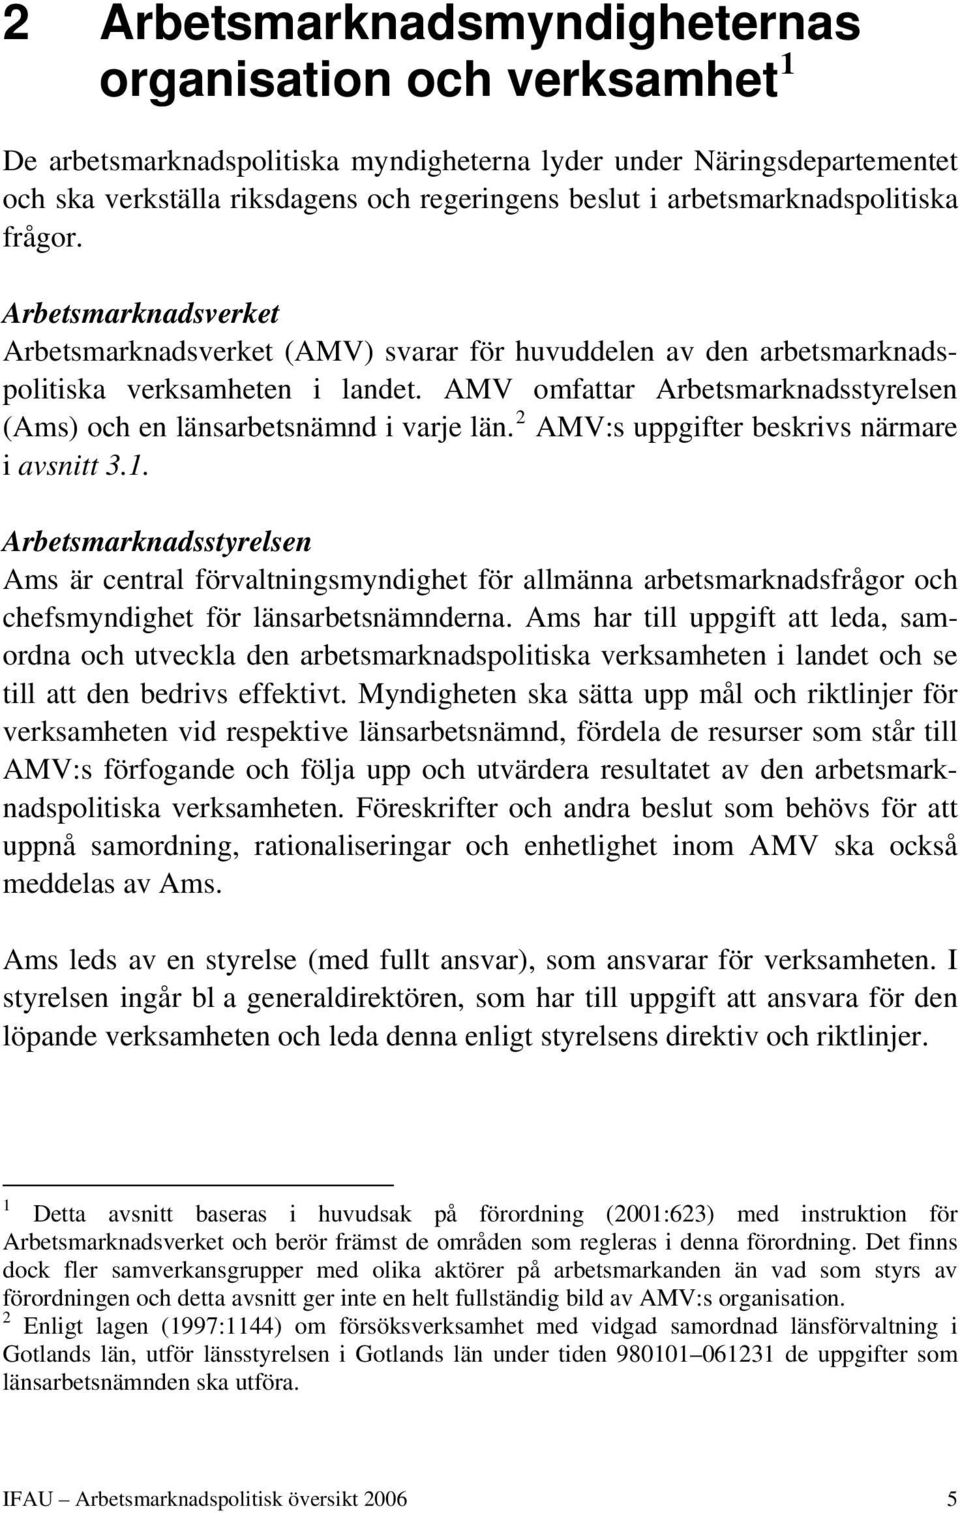 AMV omfattar Arbetsmarknadsstyrelsen (Ams) och en länsarbetsnämnd i varje län. 2 AMV:s uppgifter beskrivs närmare i avsnitt 3.1.